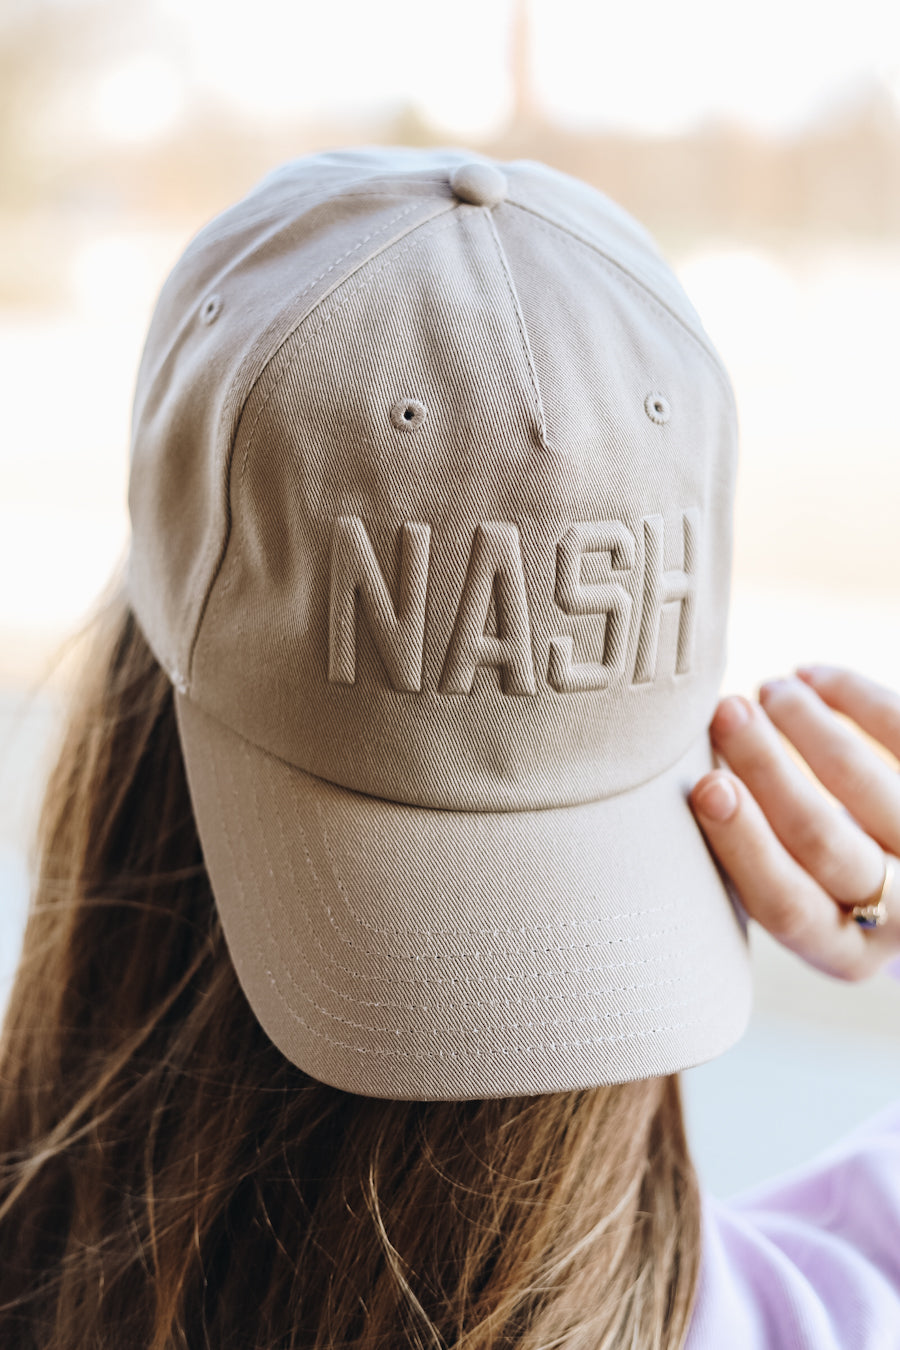 NASH Embossed Ball Cap [Tan]